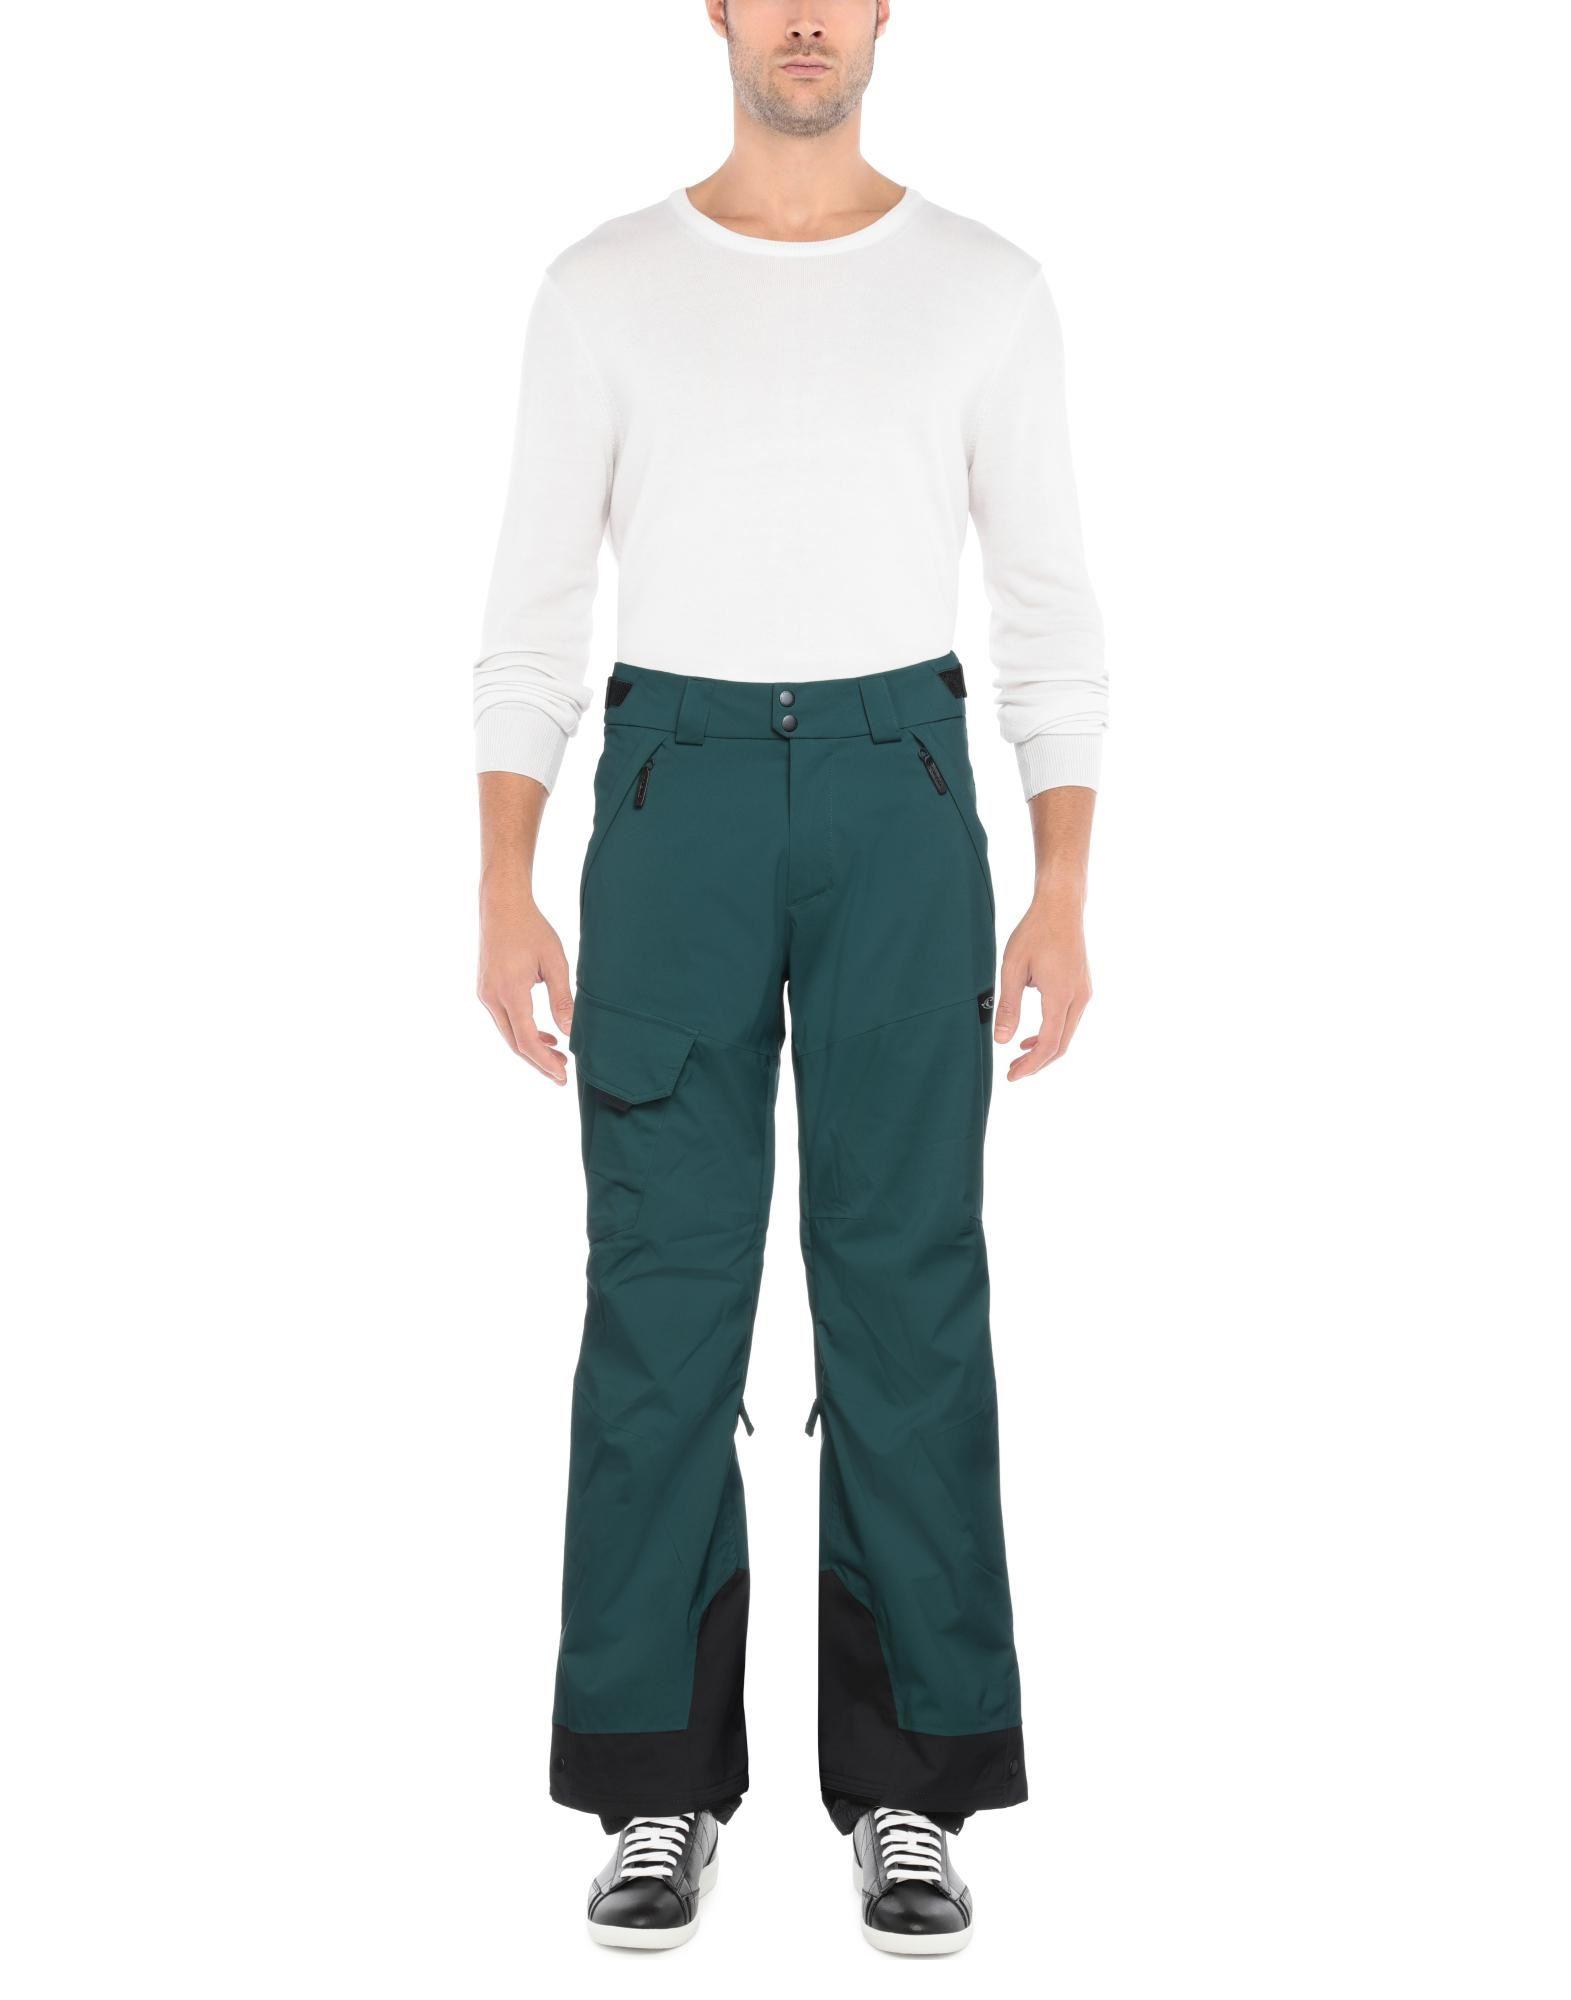 O'neill Sportswear Synthetic Snow Wear in Deep Jade (Green) for Men - Lyst